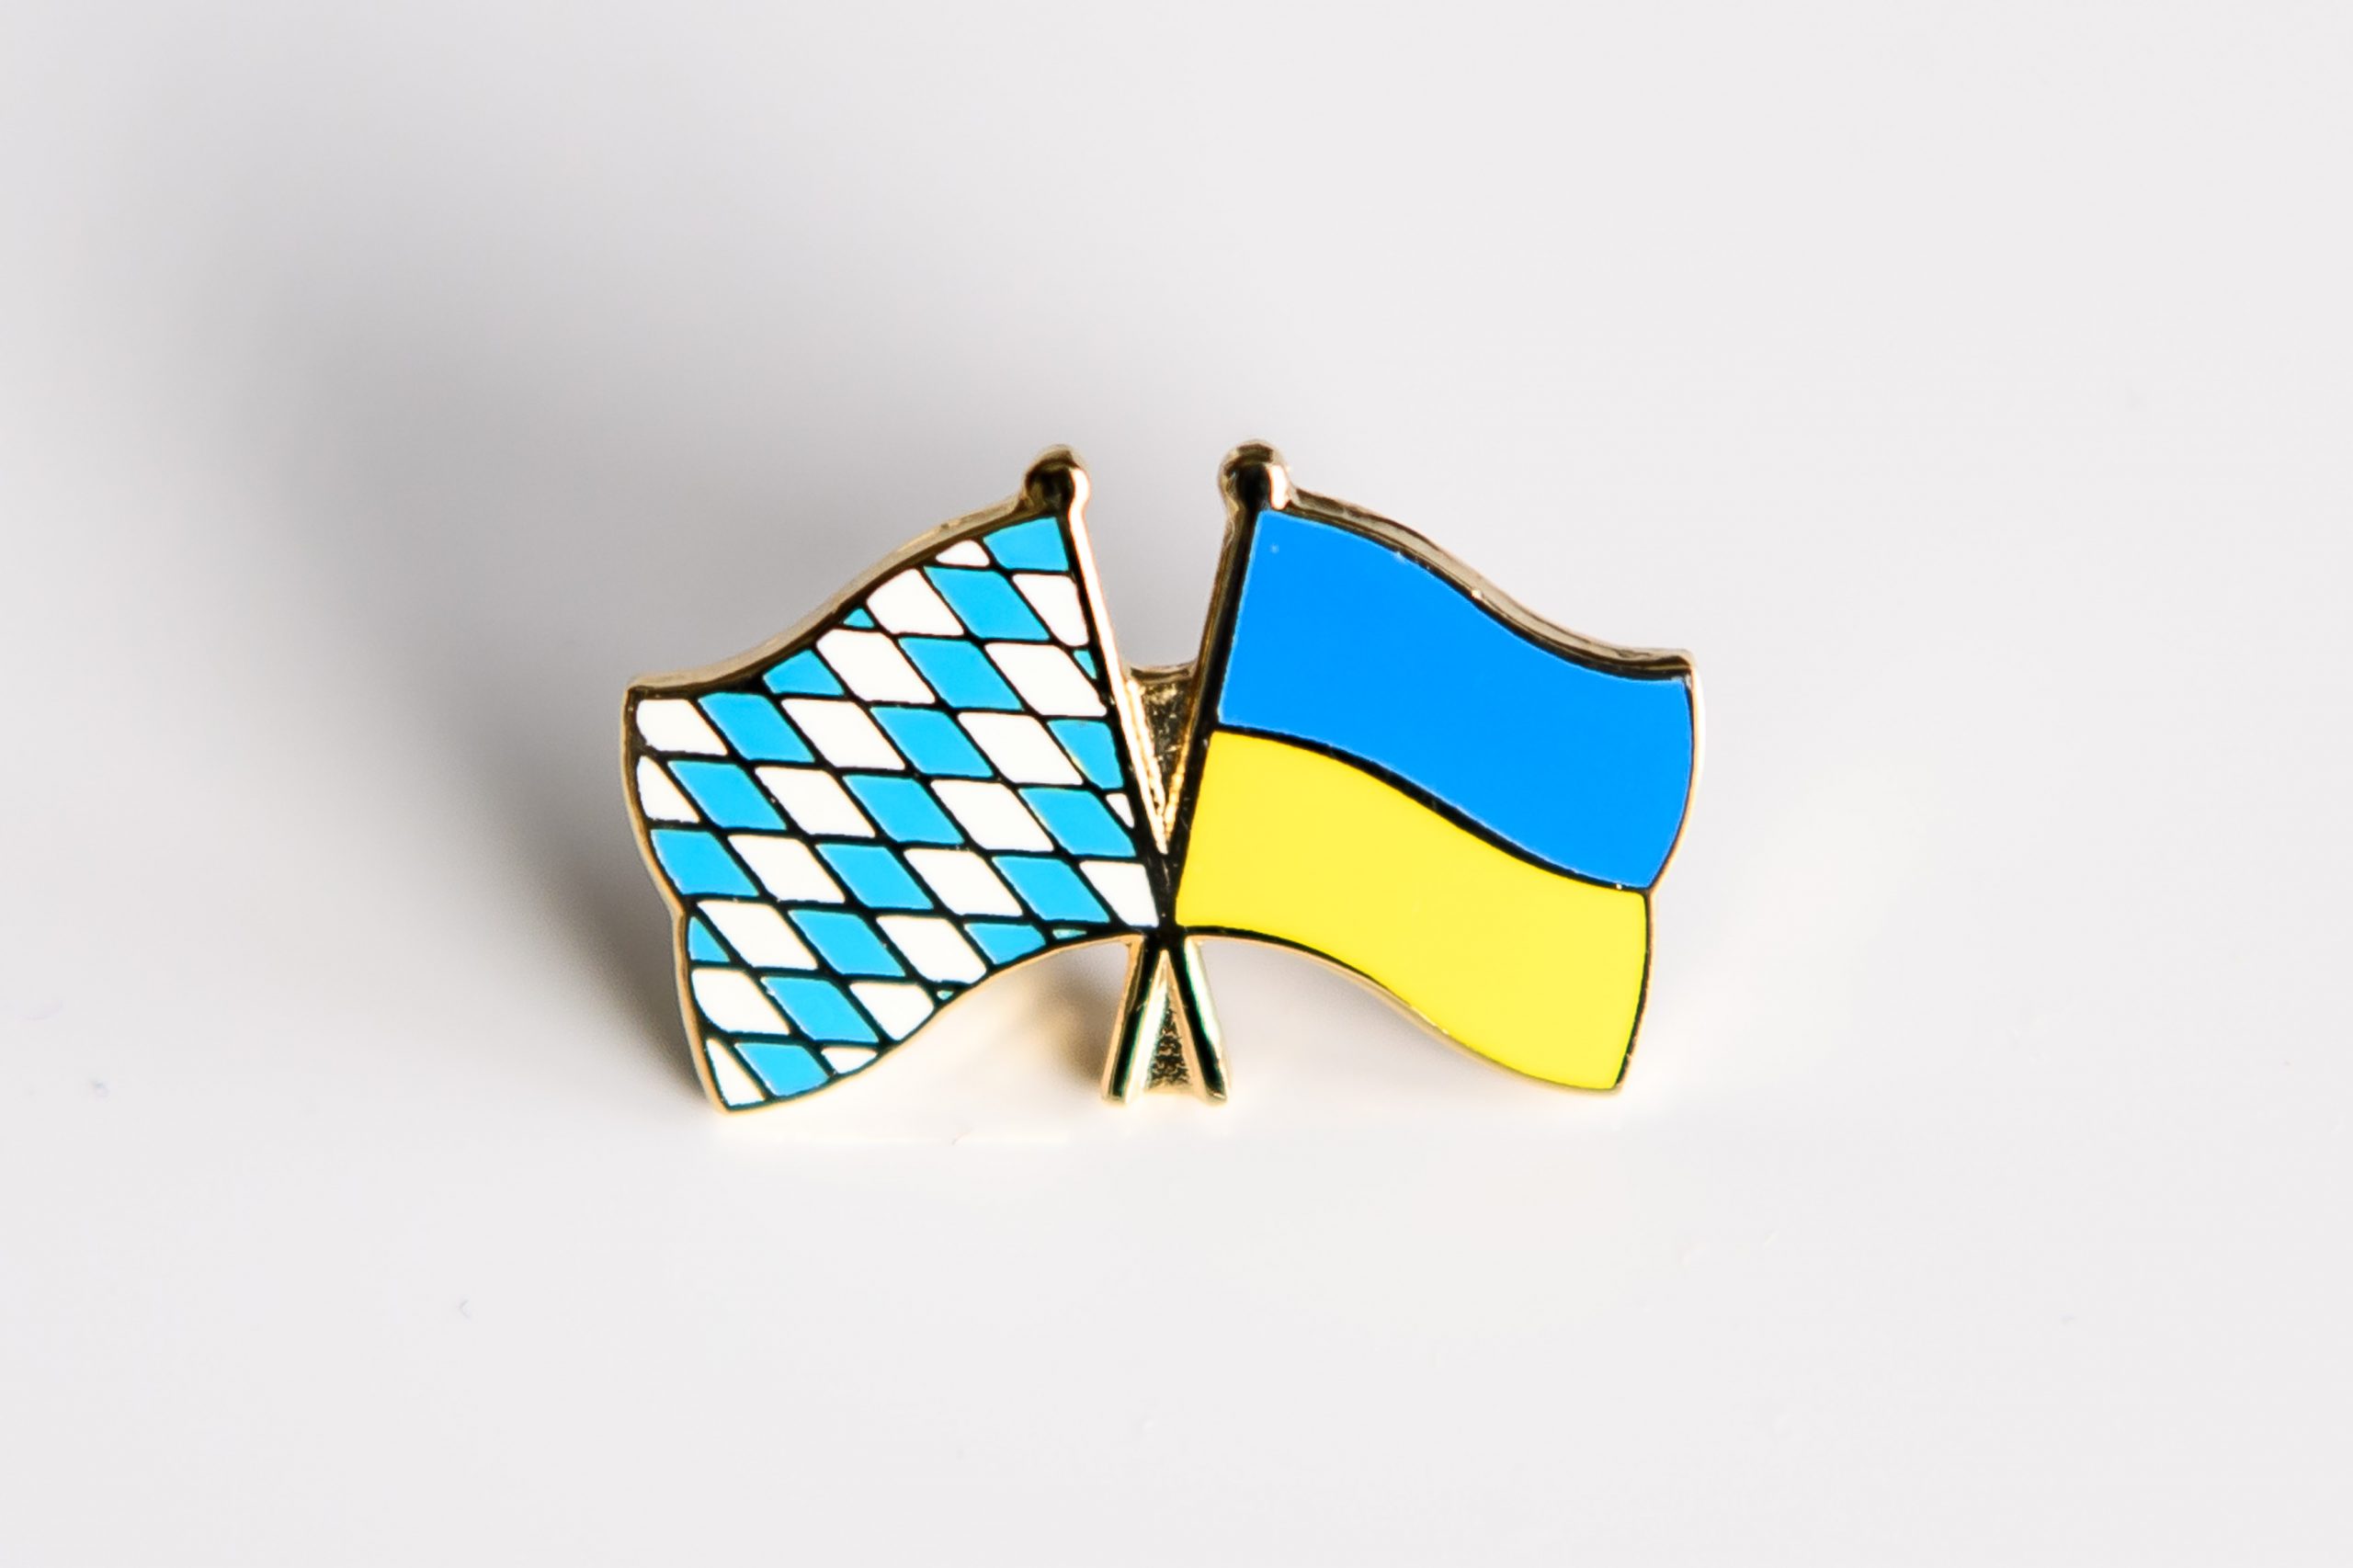 Bayerisch-ukrainische Beziehungen: Die Rautenflagge des Freistaats Bayern (links) und die Flagge der Ukraine (rechts).